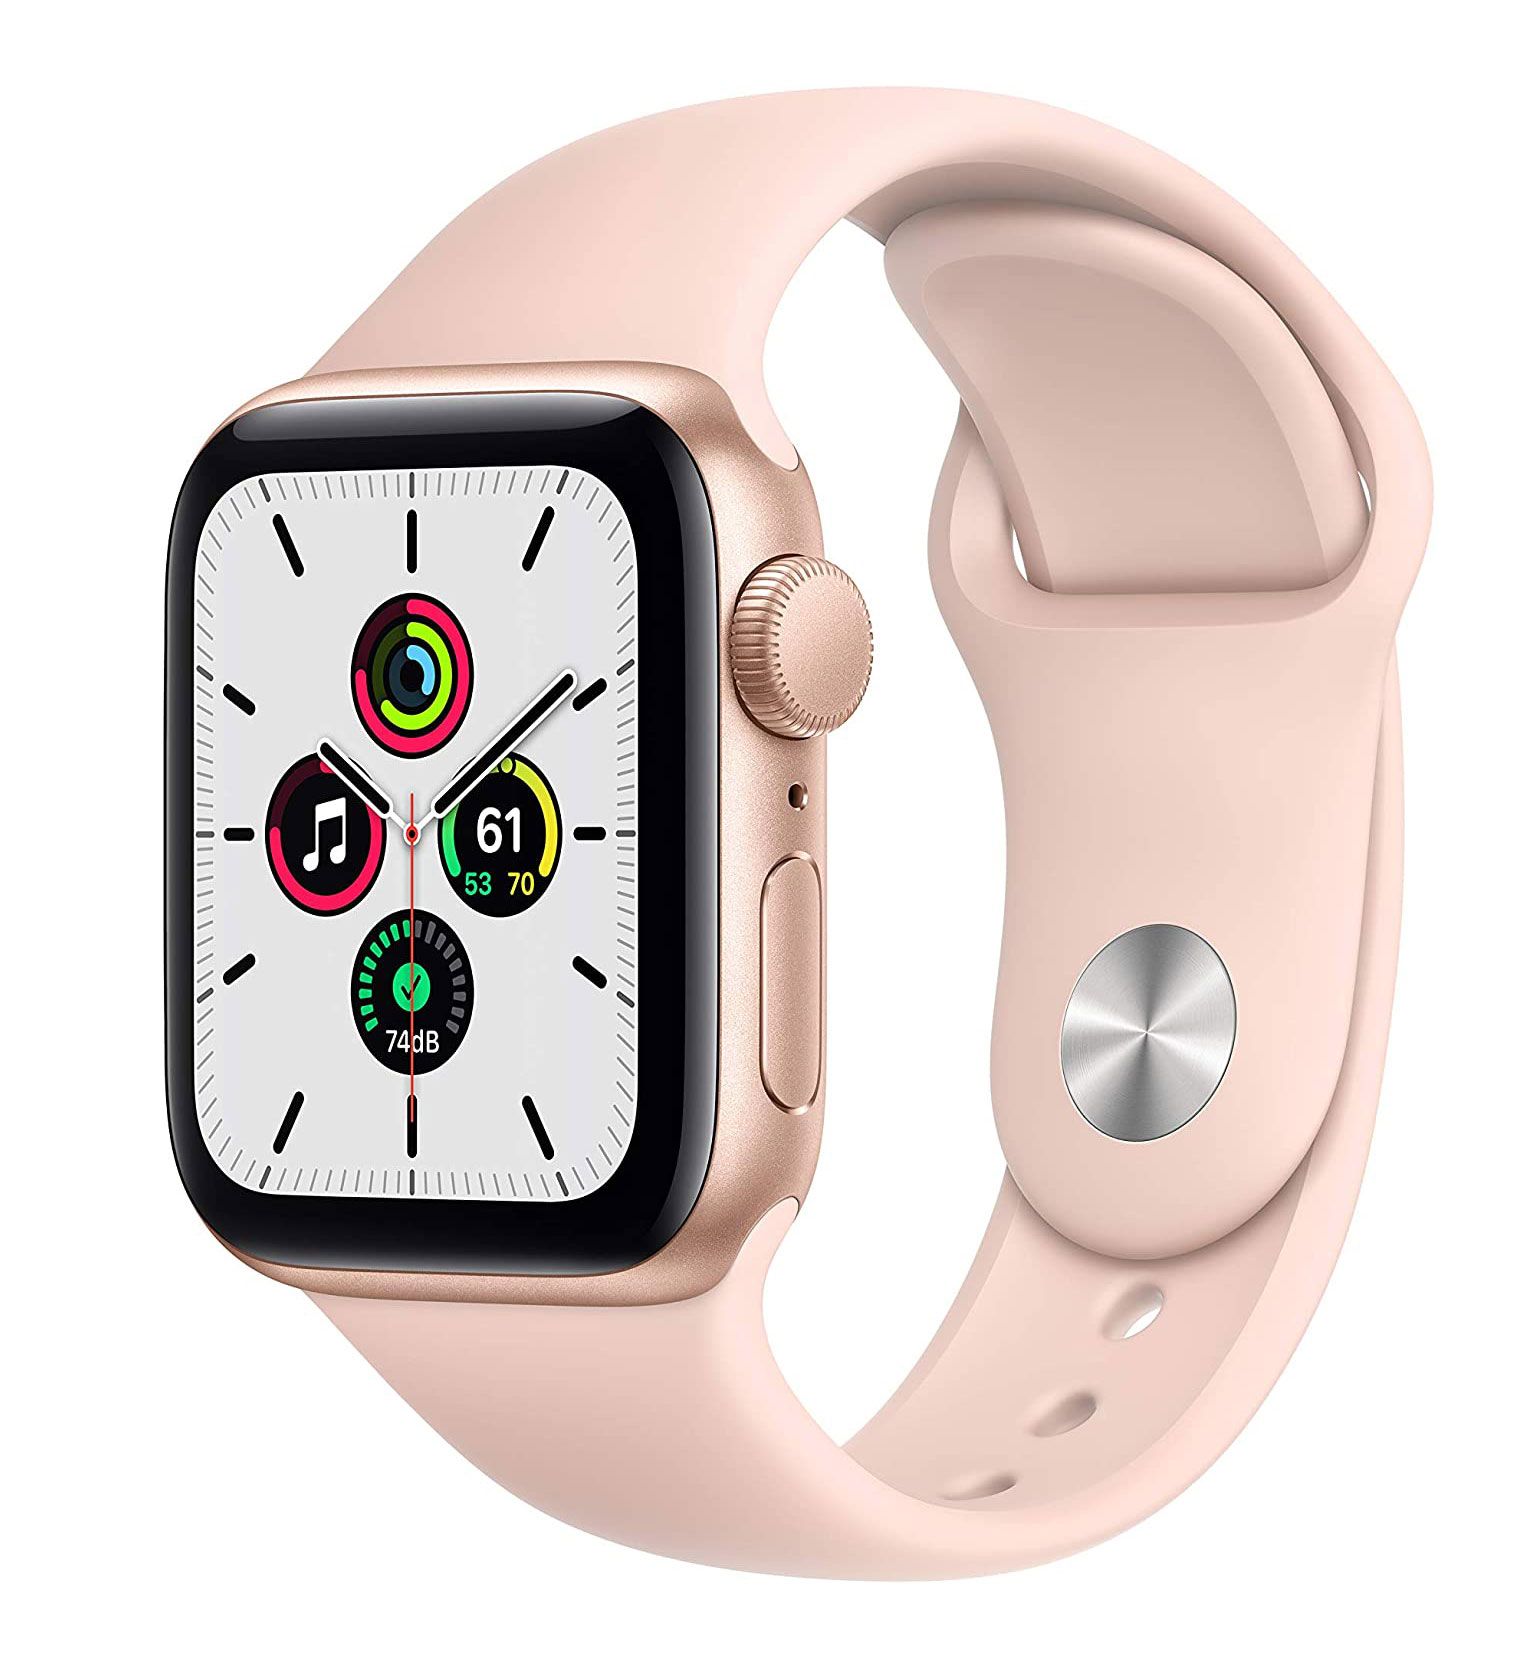 Bedste gaver, gaveideer til kvinder - Apple Watch SE